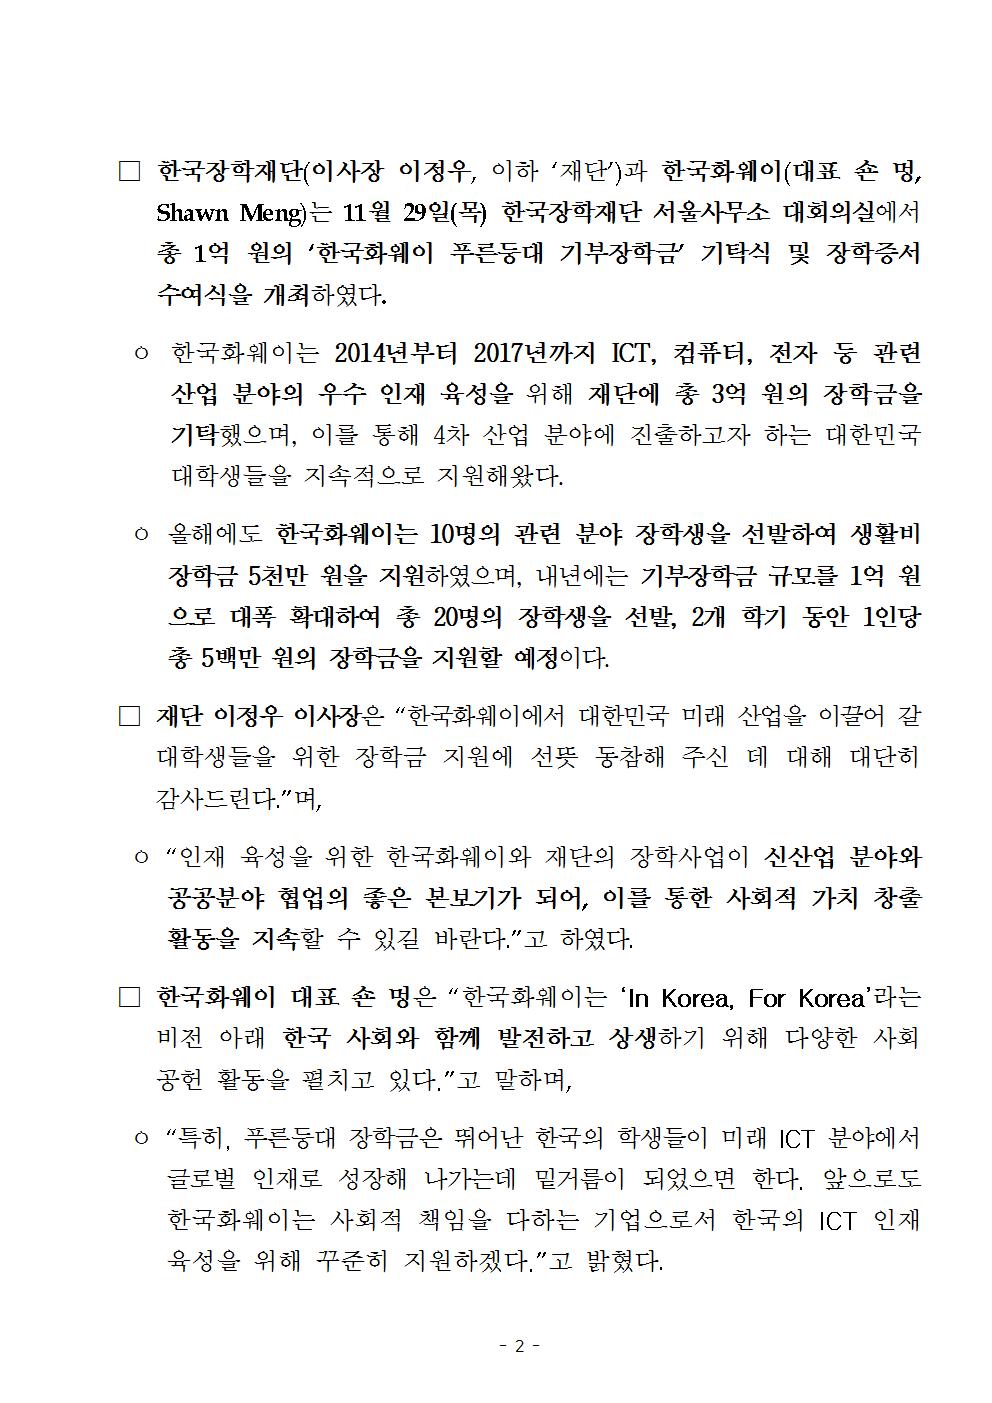 11-30(금)[보도자료] (한국장학재단-한국화웨이) 푸른등대 기부장학금 기탁식 개최002.jpg